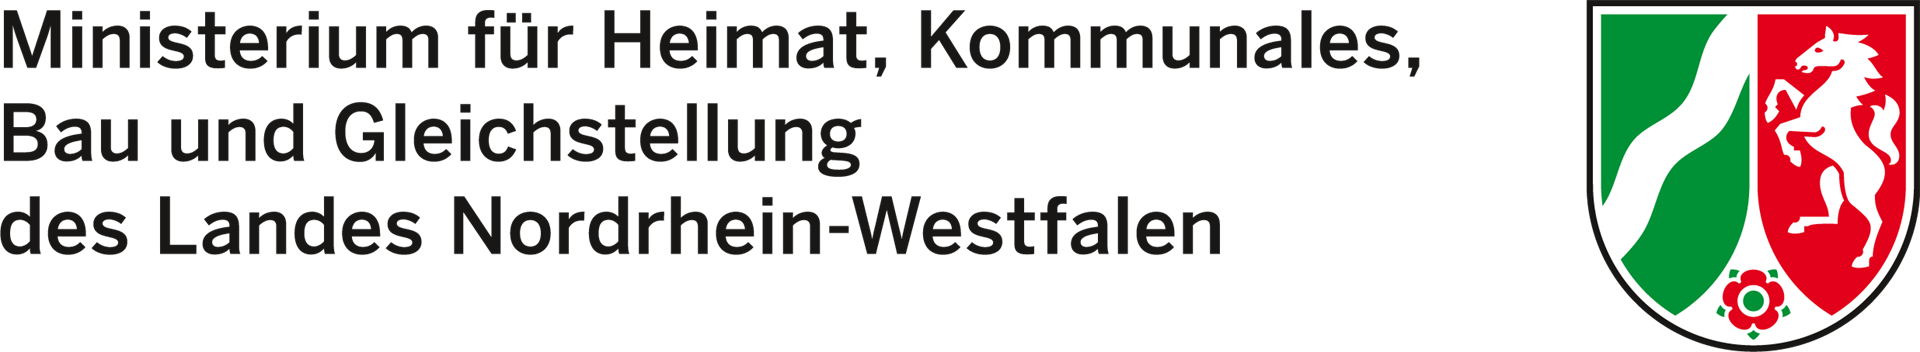 Logo Ministerium für Heimat, Kommunales, Bau und Gleichstellung NRW